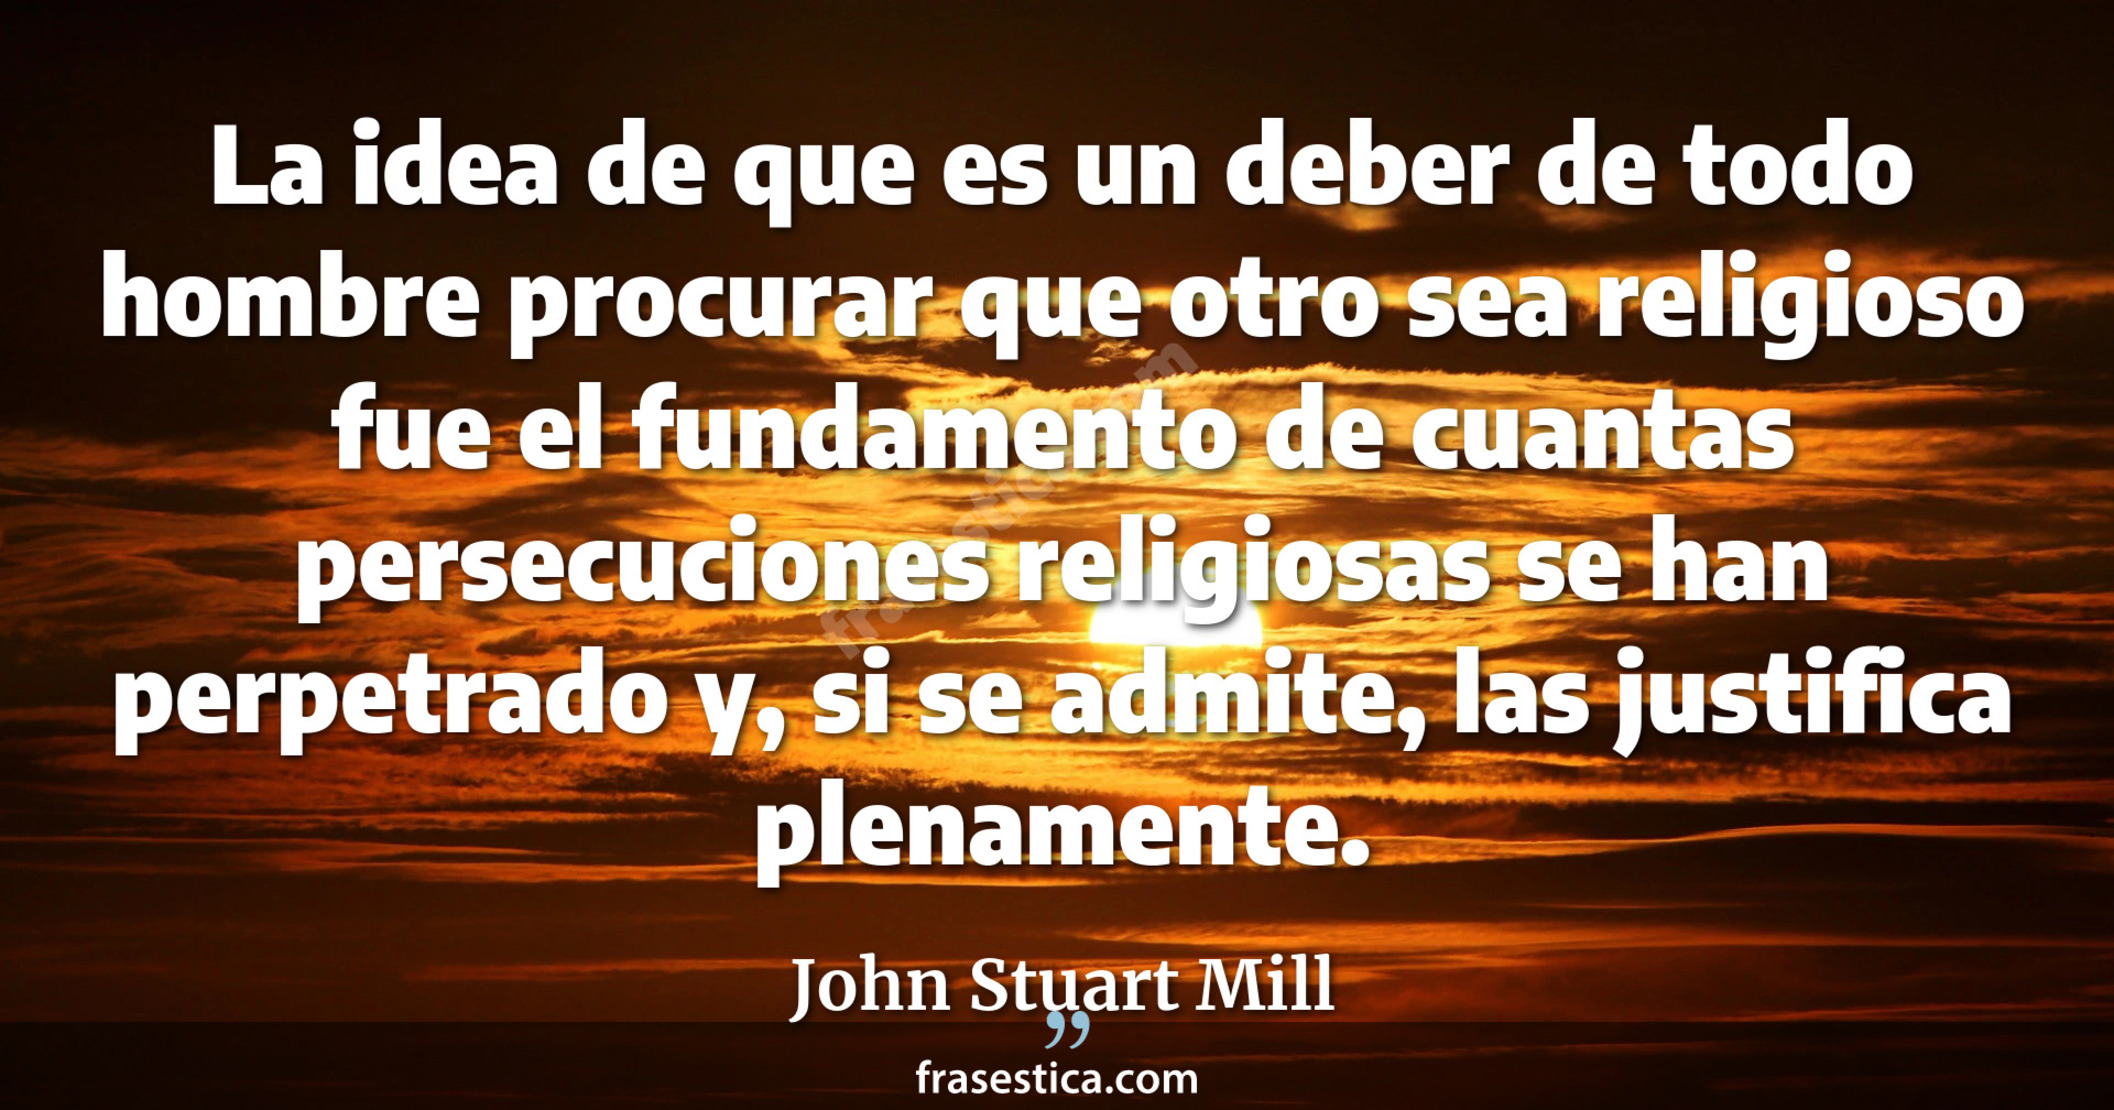 La idea de que es un deber de todo hombre procurar que otro sea religioso fue el fundamento de cuantas persecuciones religiosas se han perpetrado y, si se admite, las justifica plenamente. - John Stuart Mill